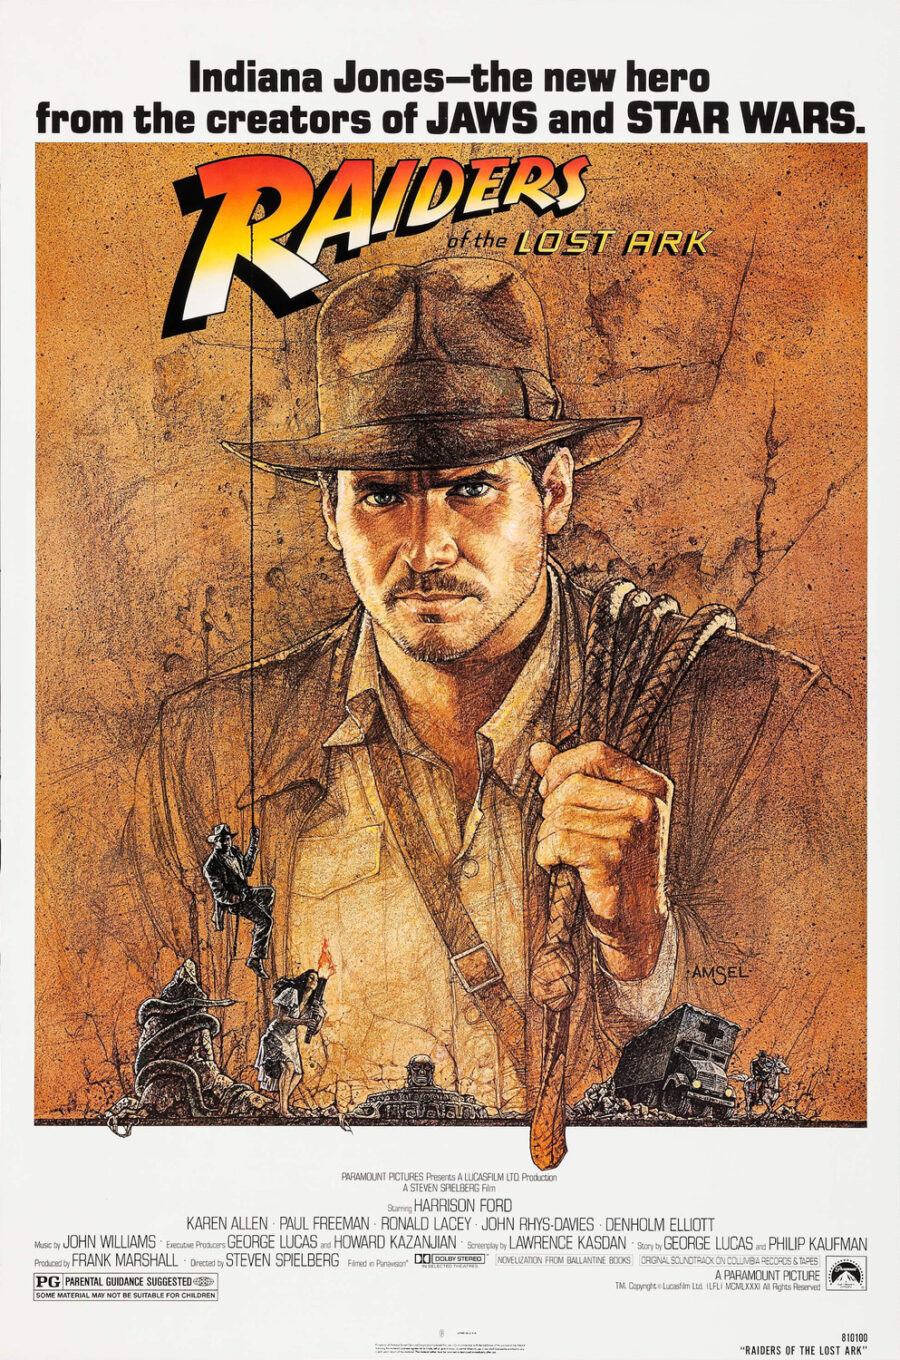 Indiana Jones movie